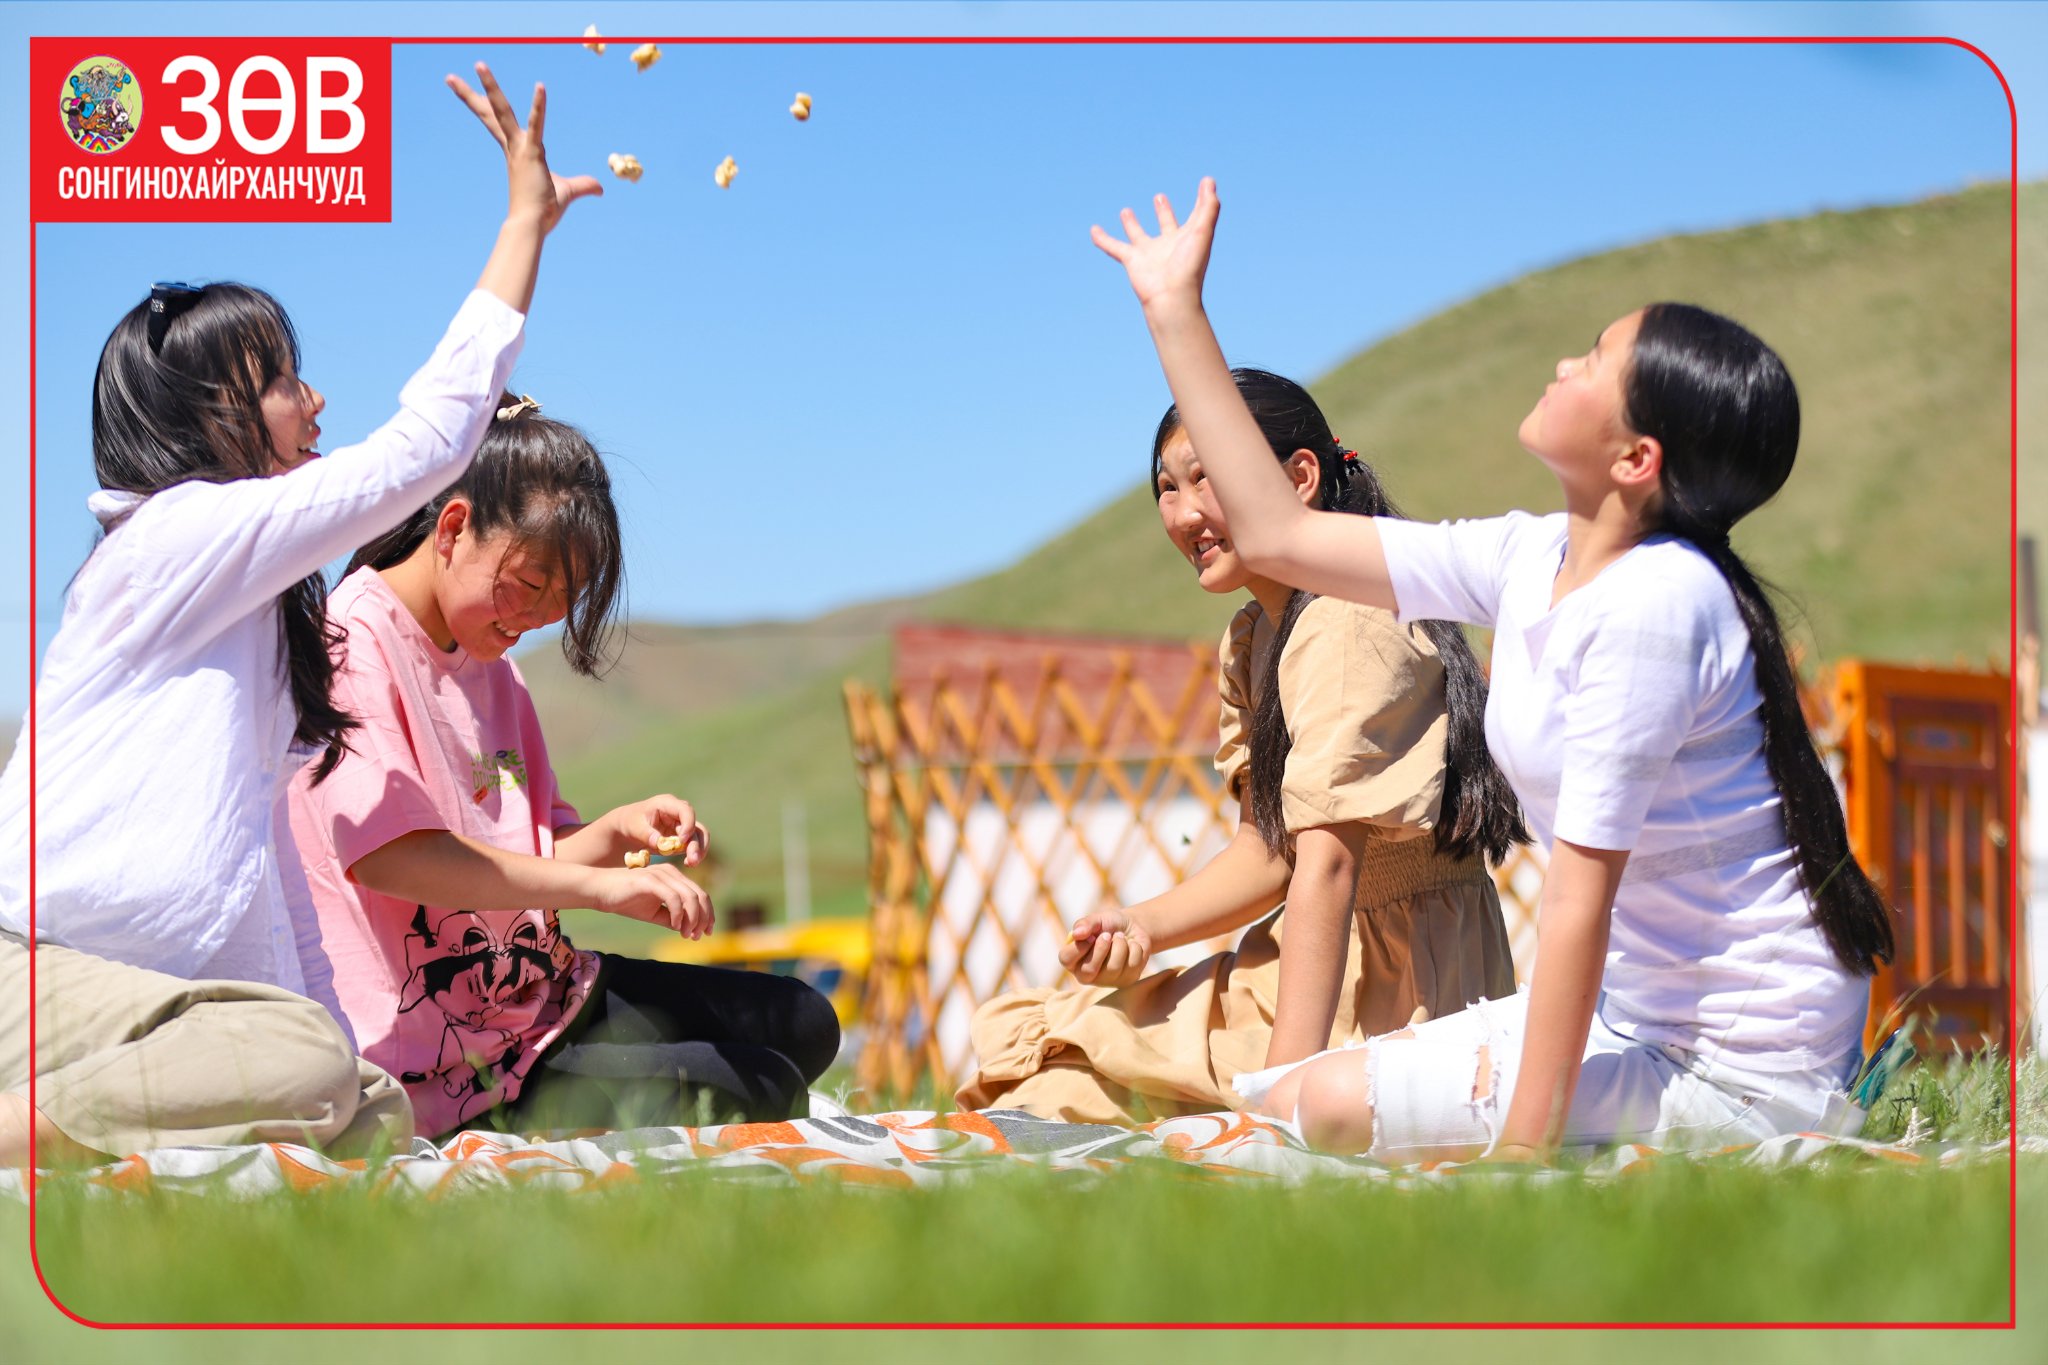 Сонгинохайрхан дүүргийн хүүхдүүд Монгол ёс заншлаасаа суралцаж байна